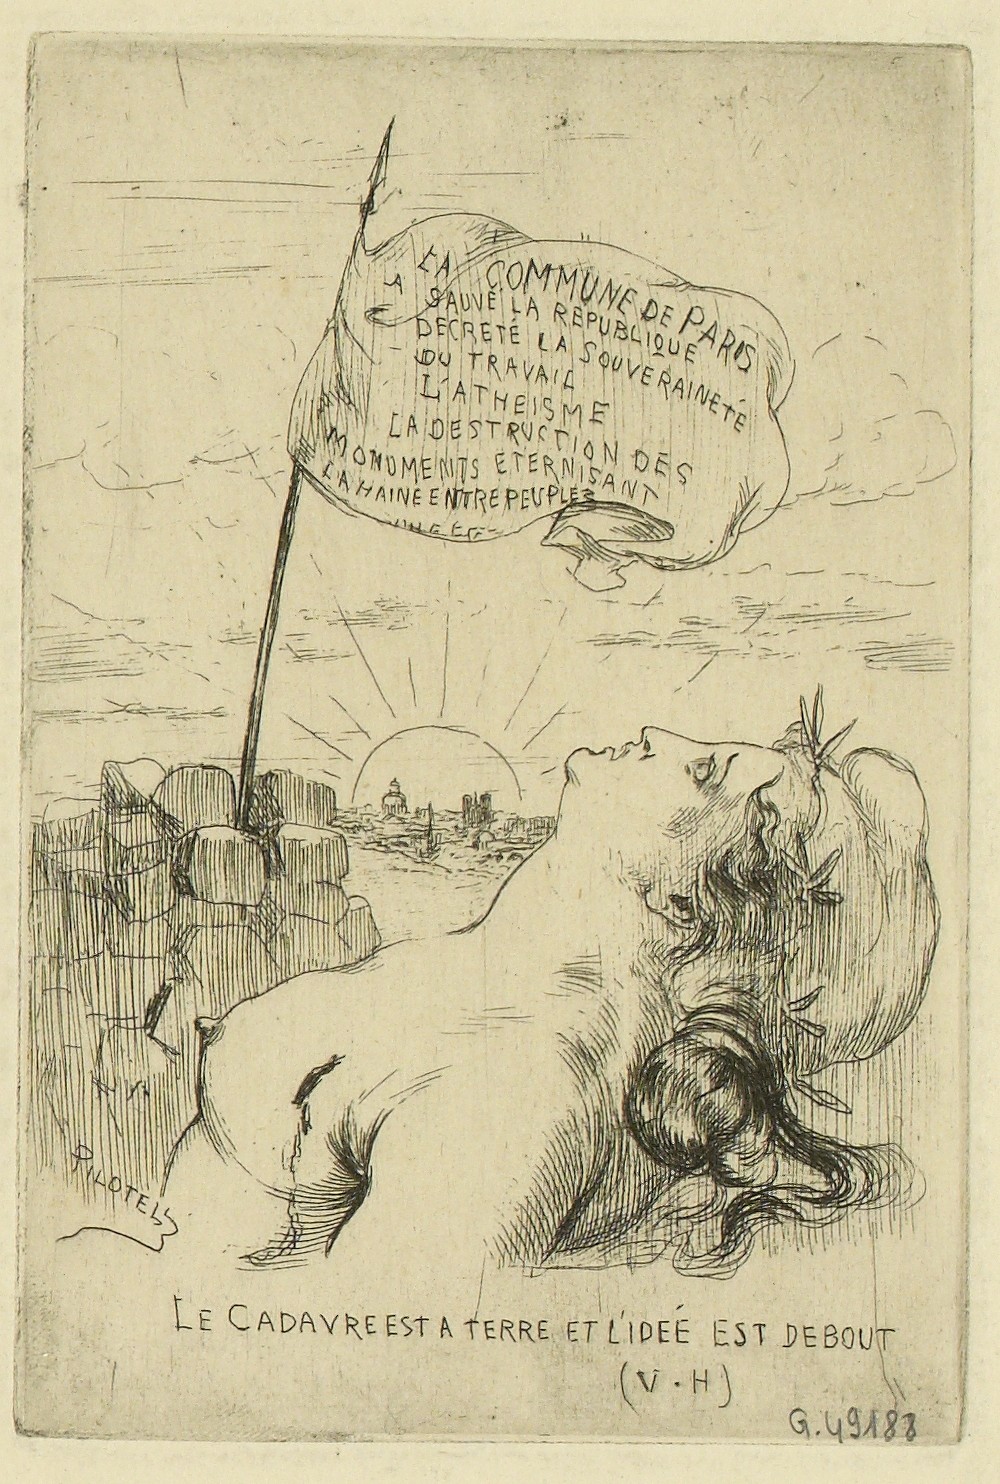 Gravure de Pilotell "Le cadavre est à terre mais l'idée est debout" - Vers 1871 (Source : CC0 Paris Musées / Musée Carnavalet - Histoire de Paris)